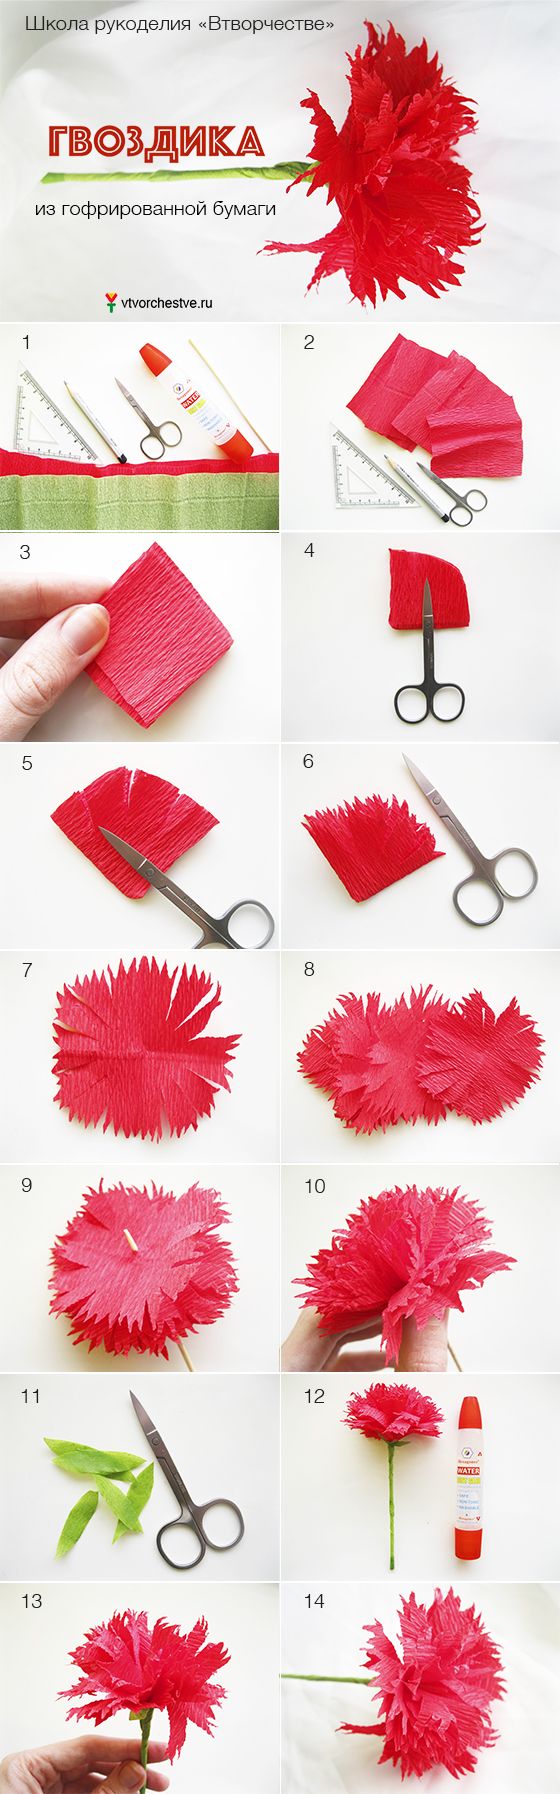 Цветок георгин из гофрированной бумаги: инструкции как сделать